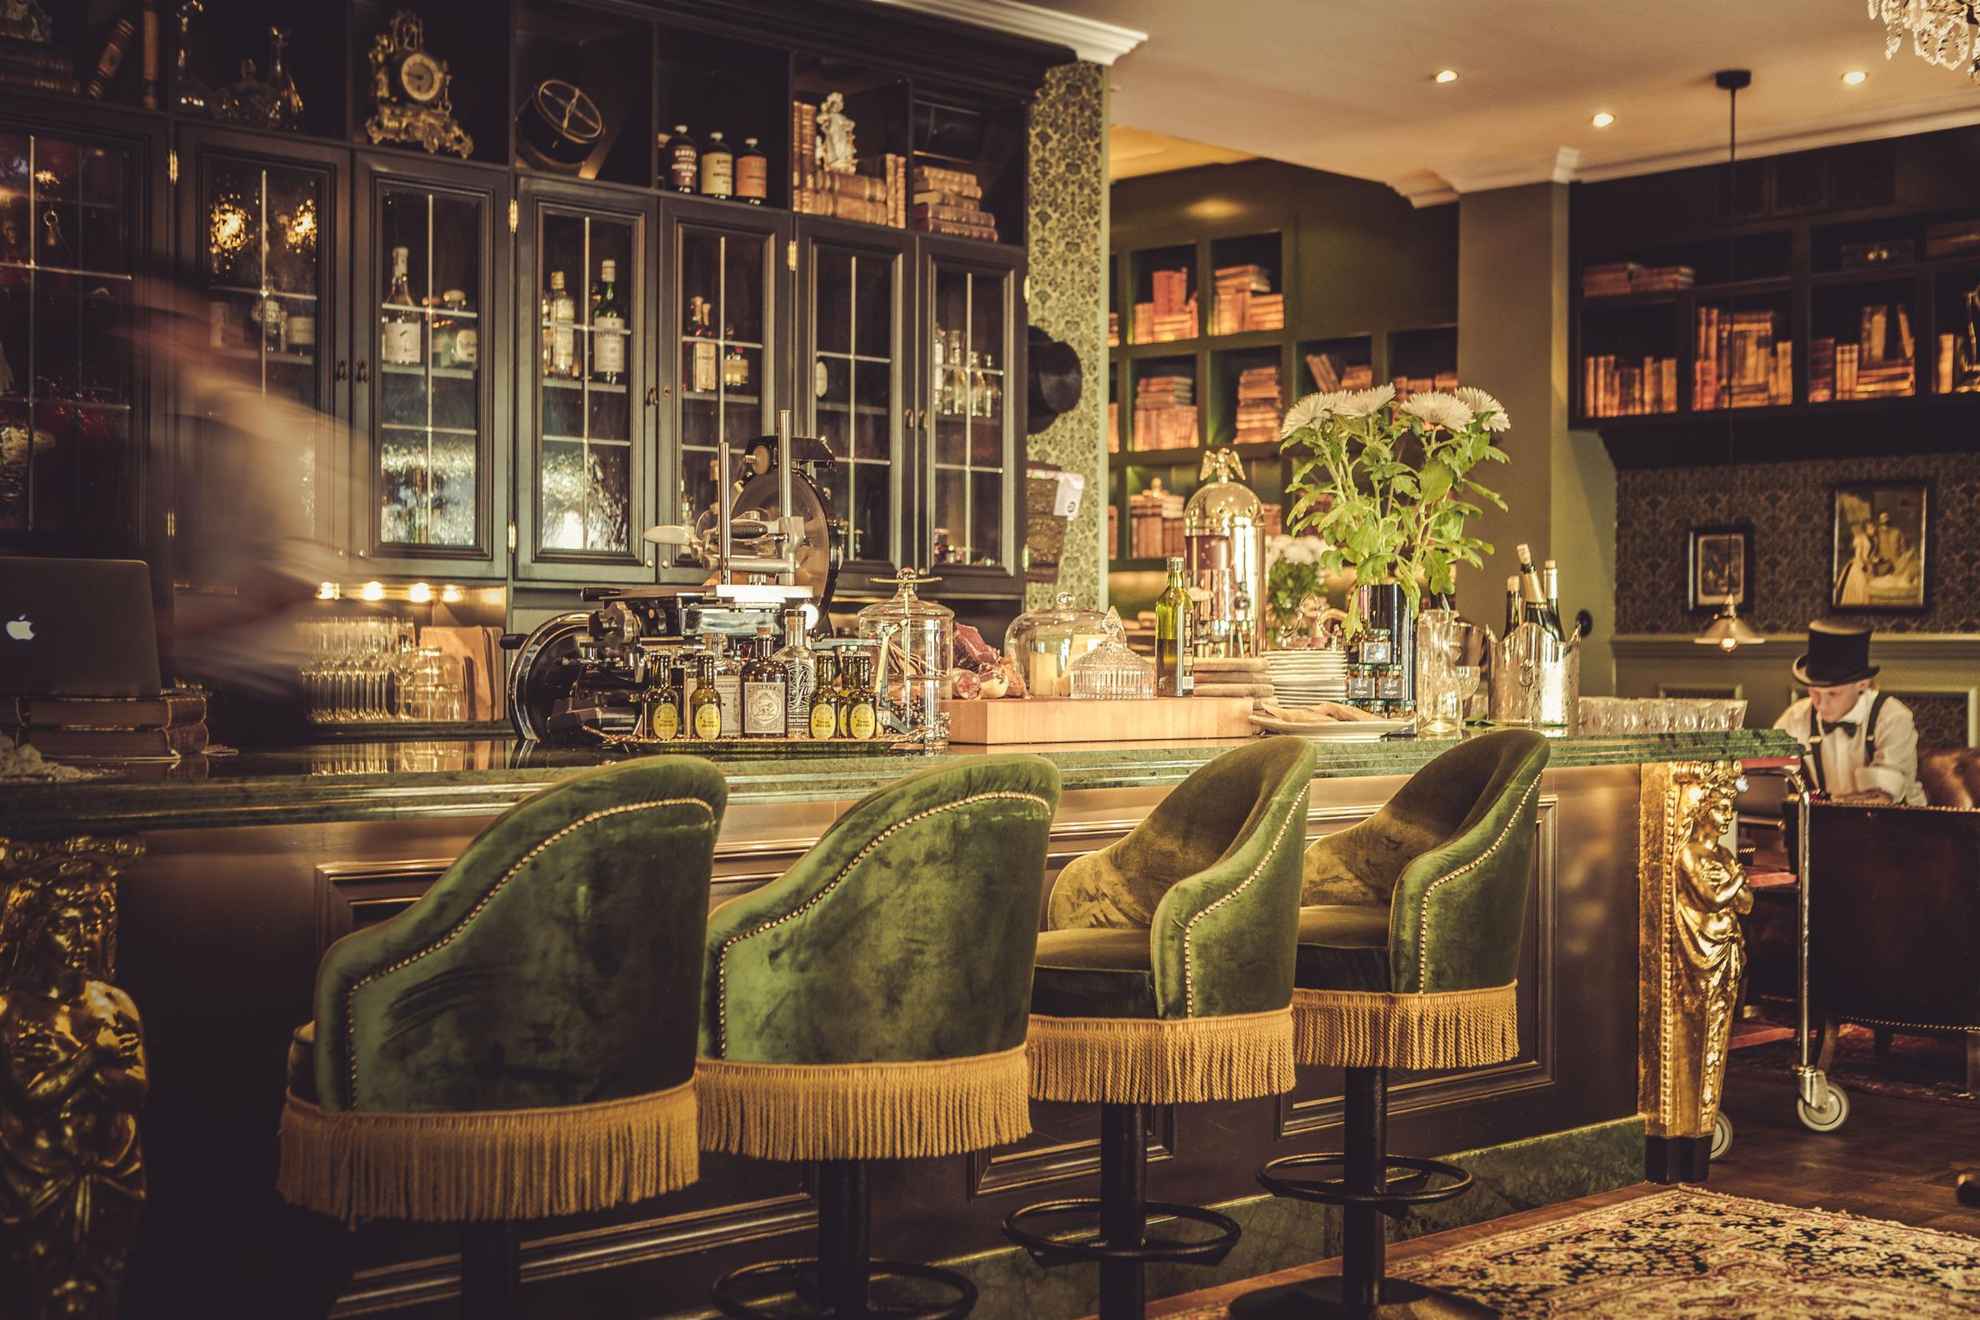 Die Bar im Hotel Pigalle, mit grünen Samtstühlen, Holzregalen und goldenen Details. Jemand bewegt sich hinter der Bar.